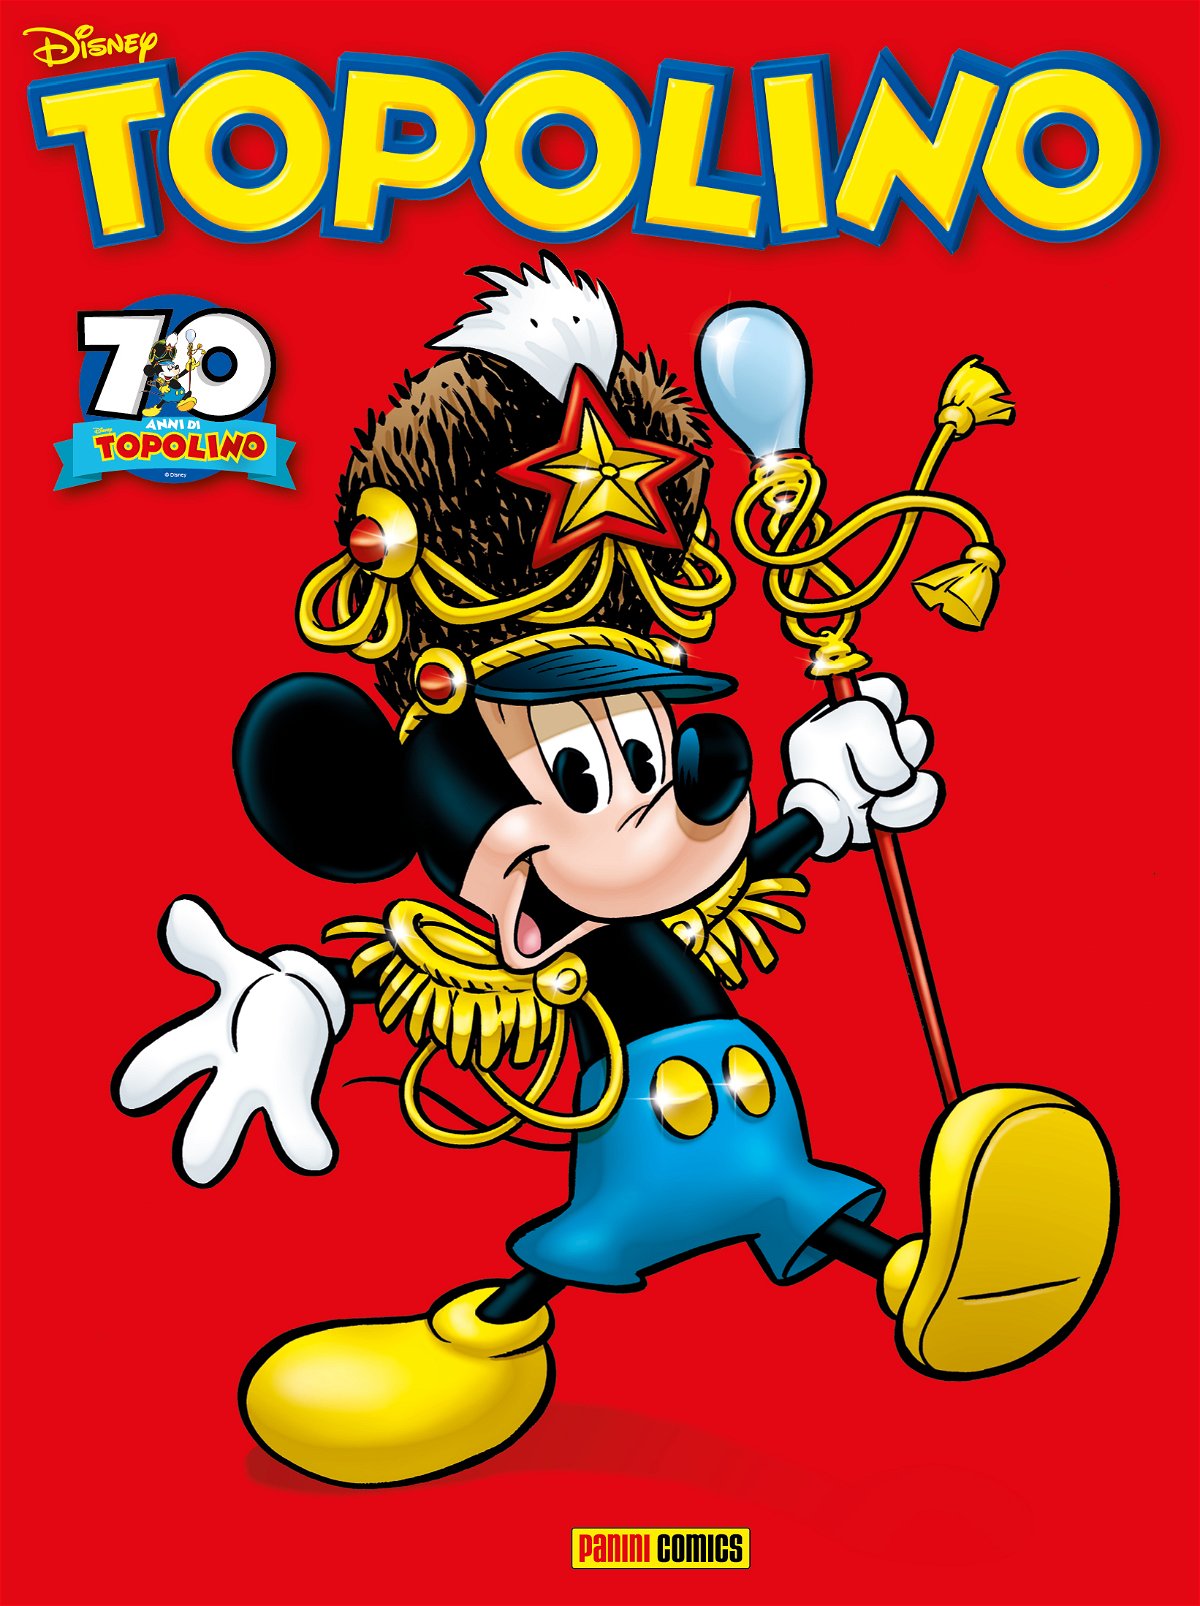 Topolino - copertina di Giorgio Cavazzano per i 70 anni di anniversario